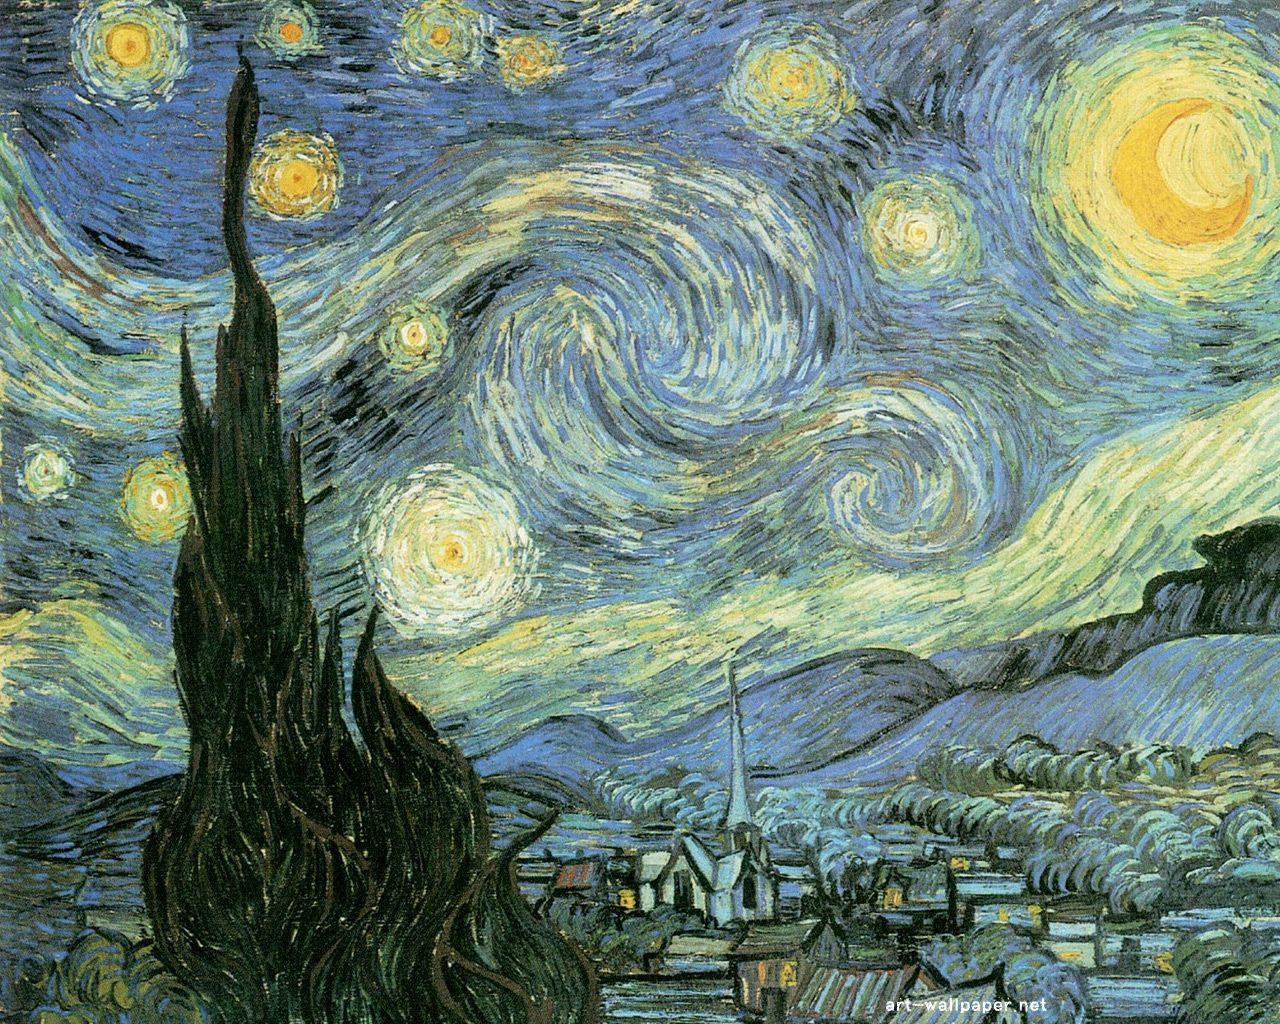 دانلود عکس واقعی و اصلی نقاشی شب پر ستاره از ونسان ون گوگ